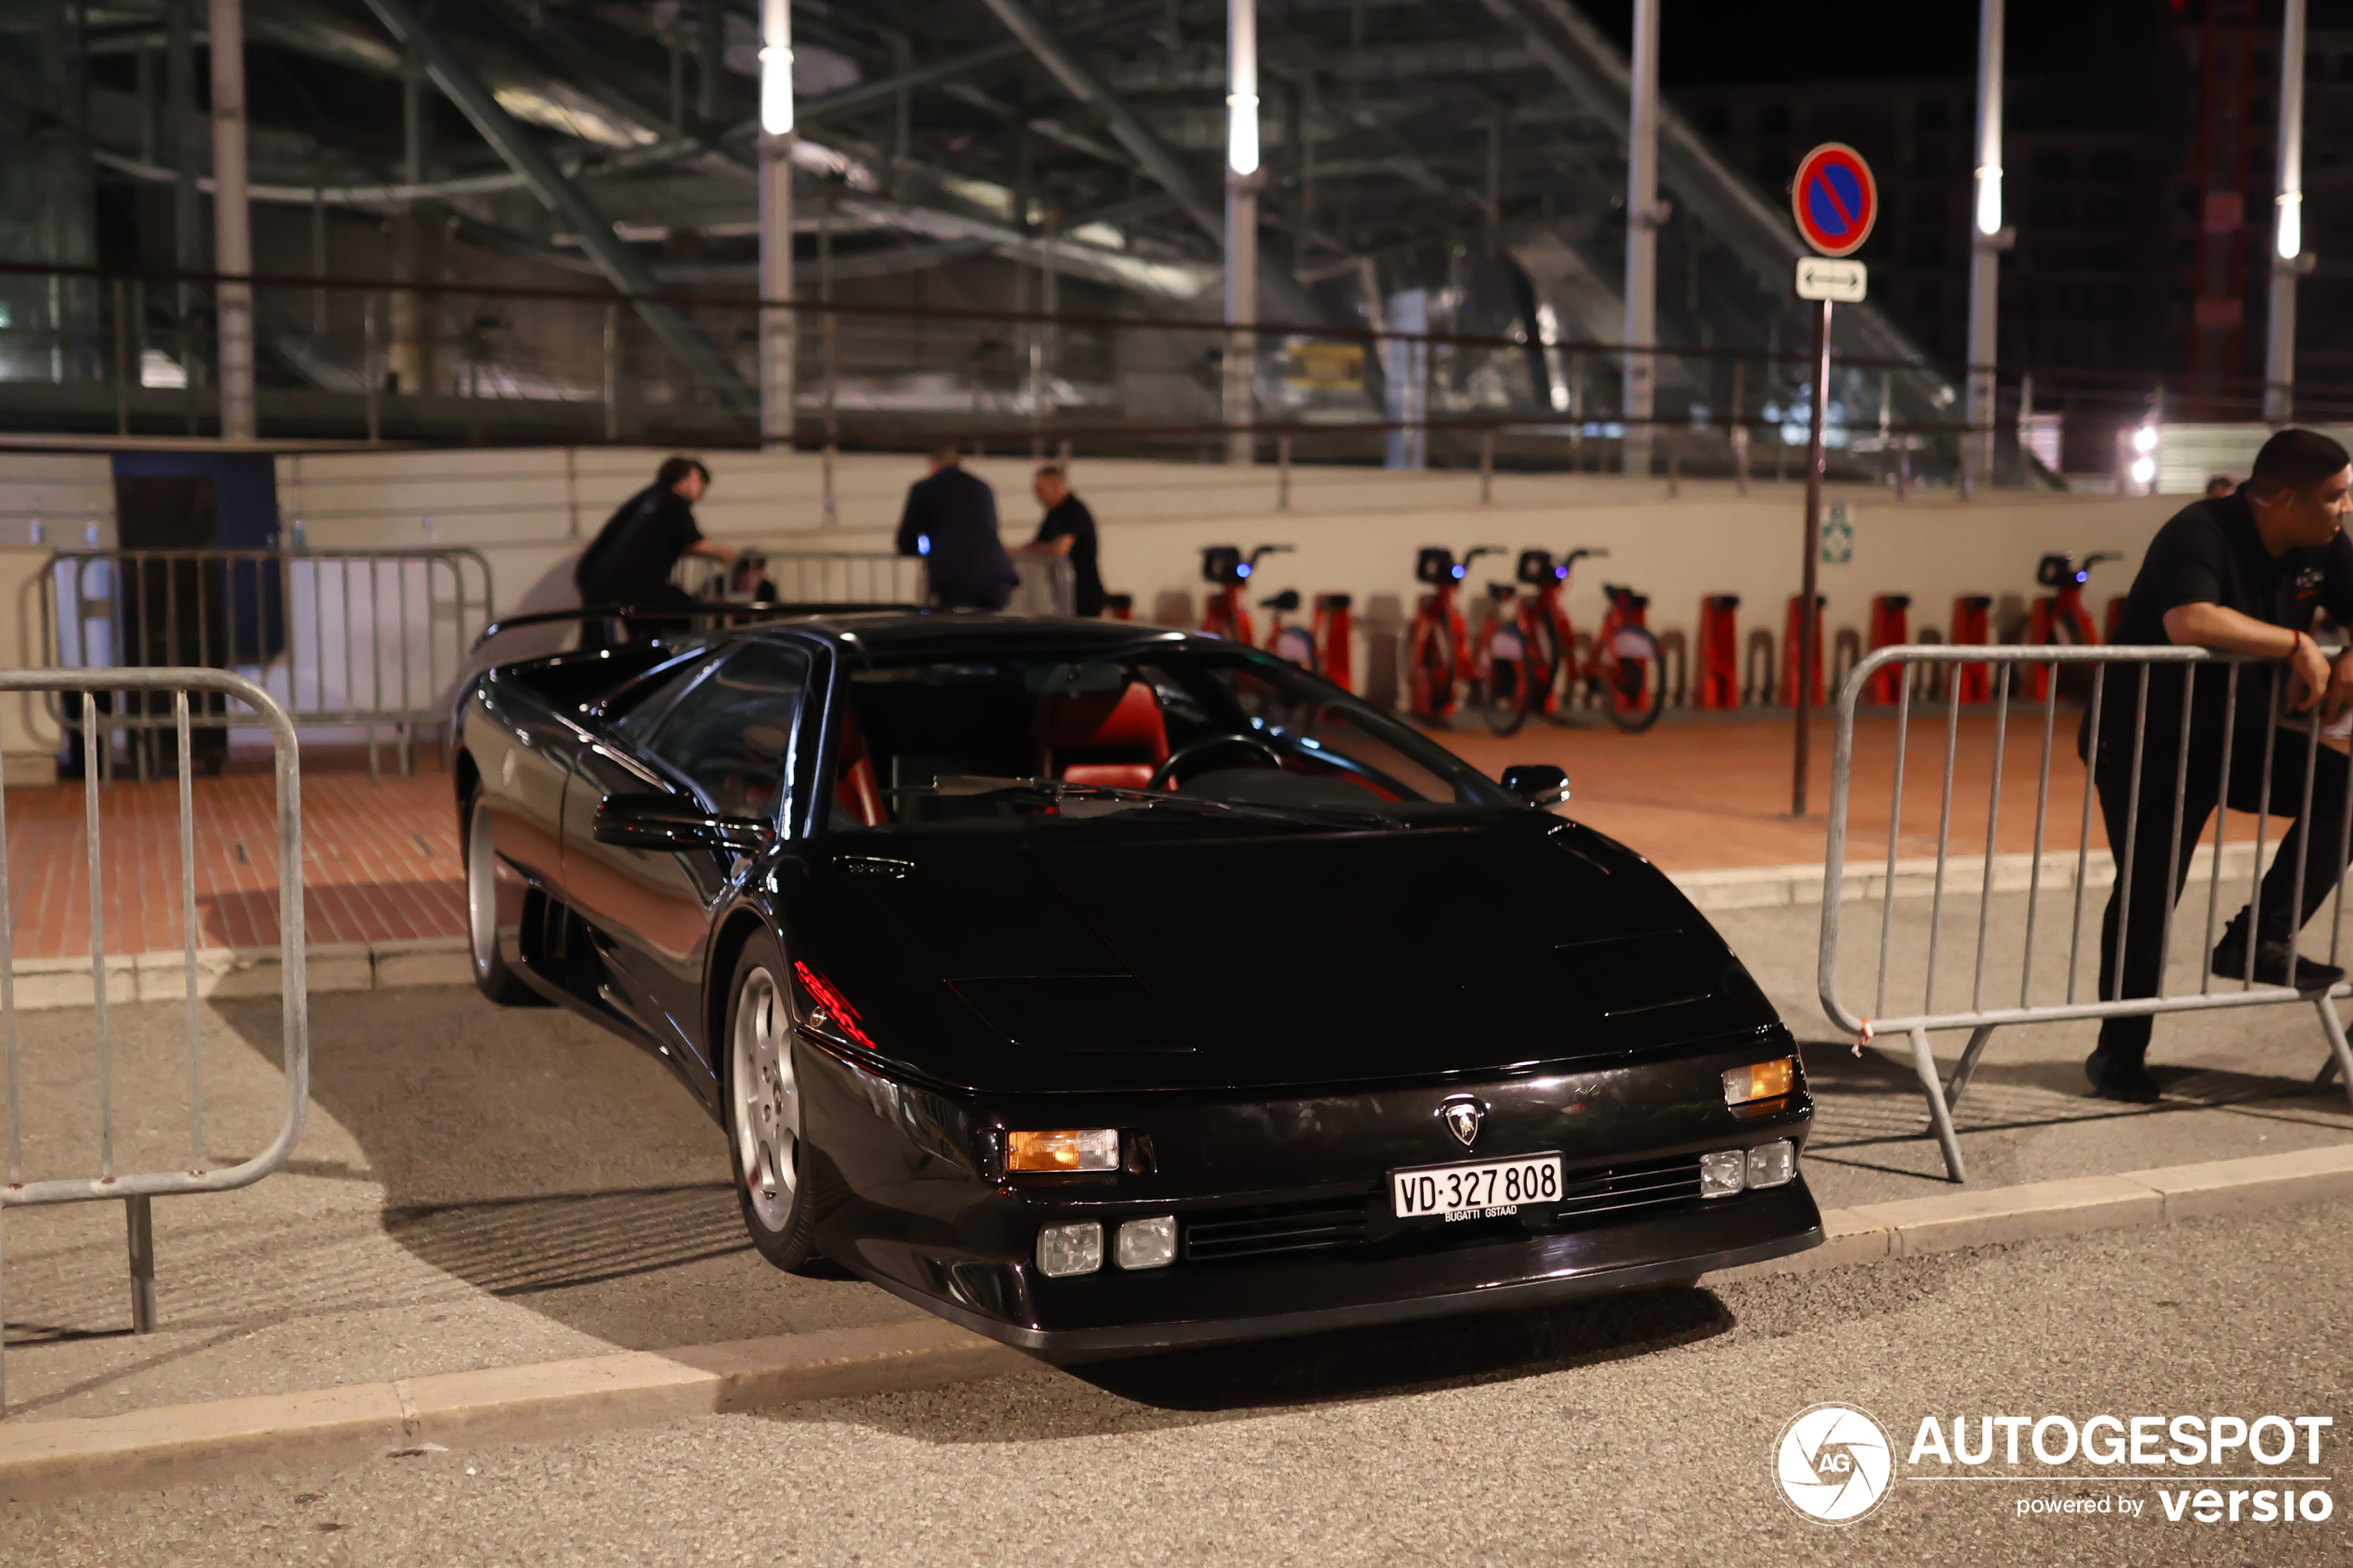 A Lamborghini Diablo SE30 shows up in Monaco